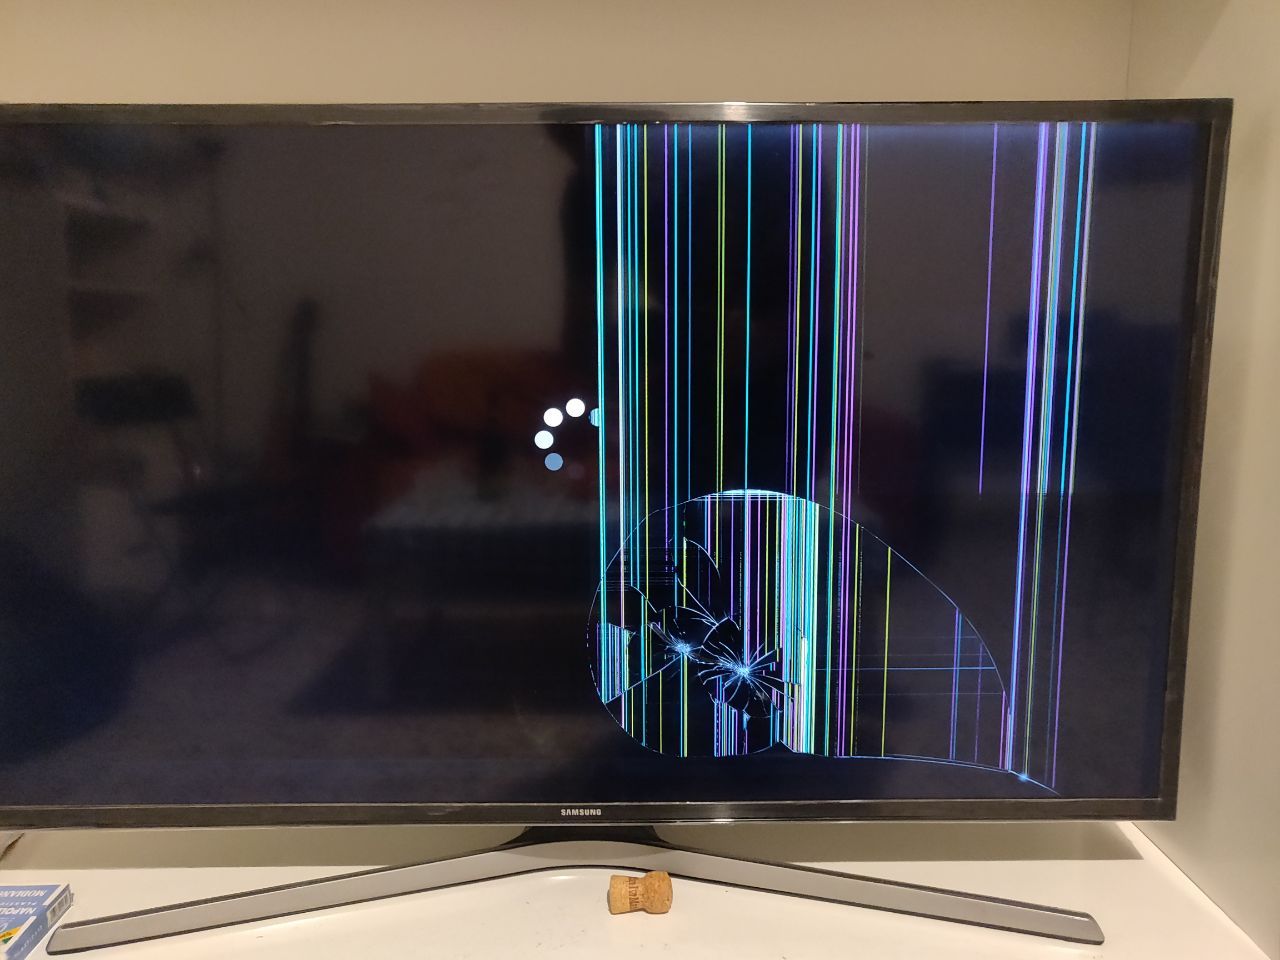 Schermo Smart tv danneggiato: suggerimenti su riciclo, rottamazione etc.. -  Samsung Community